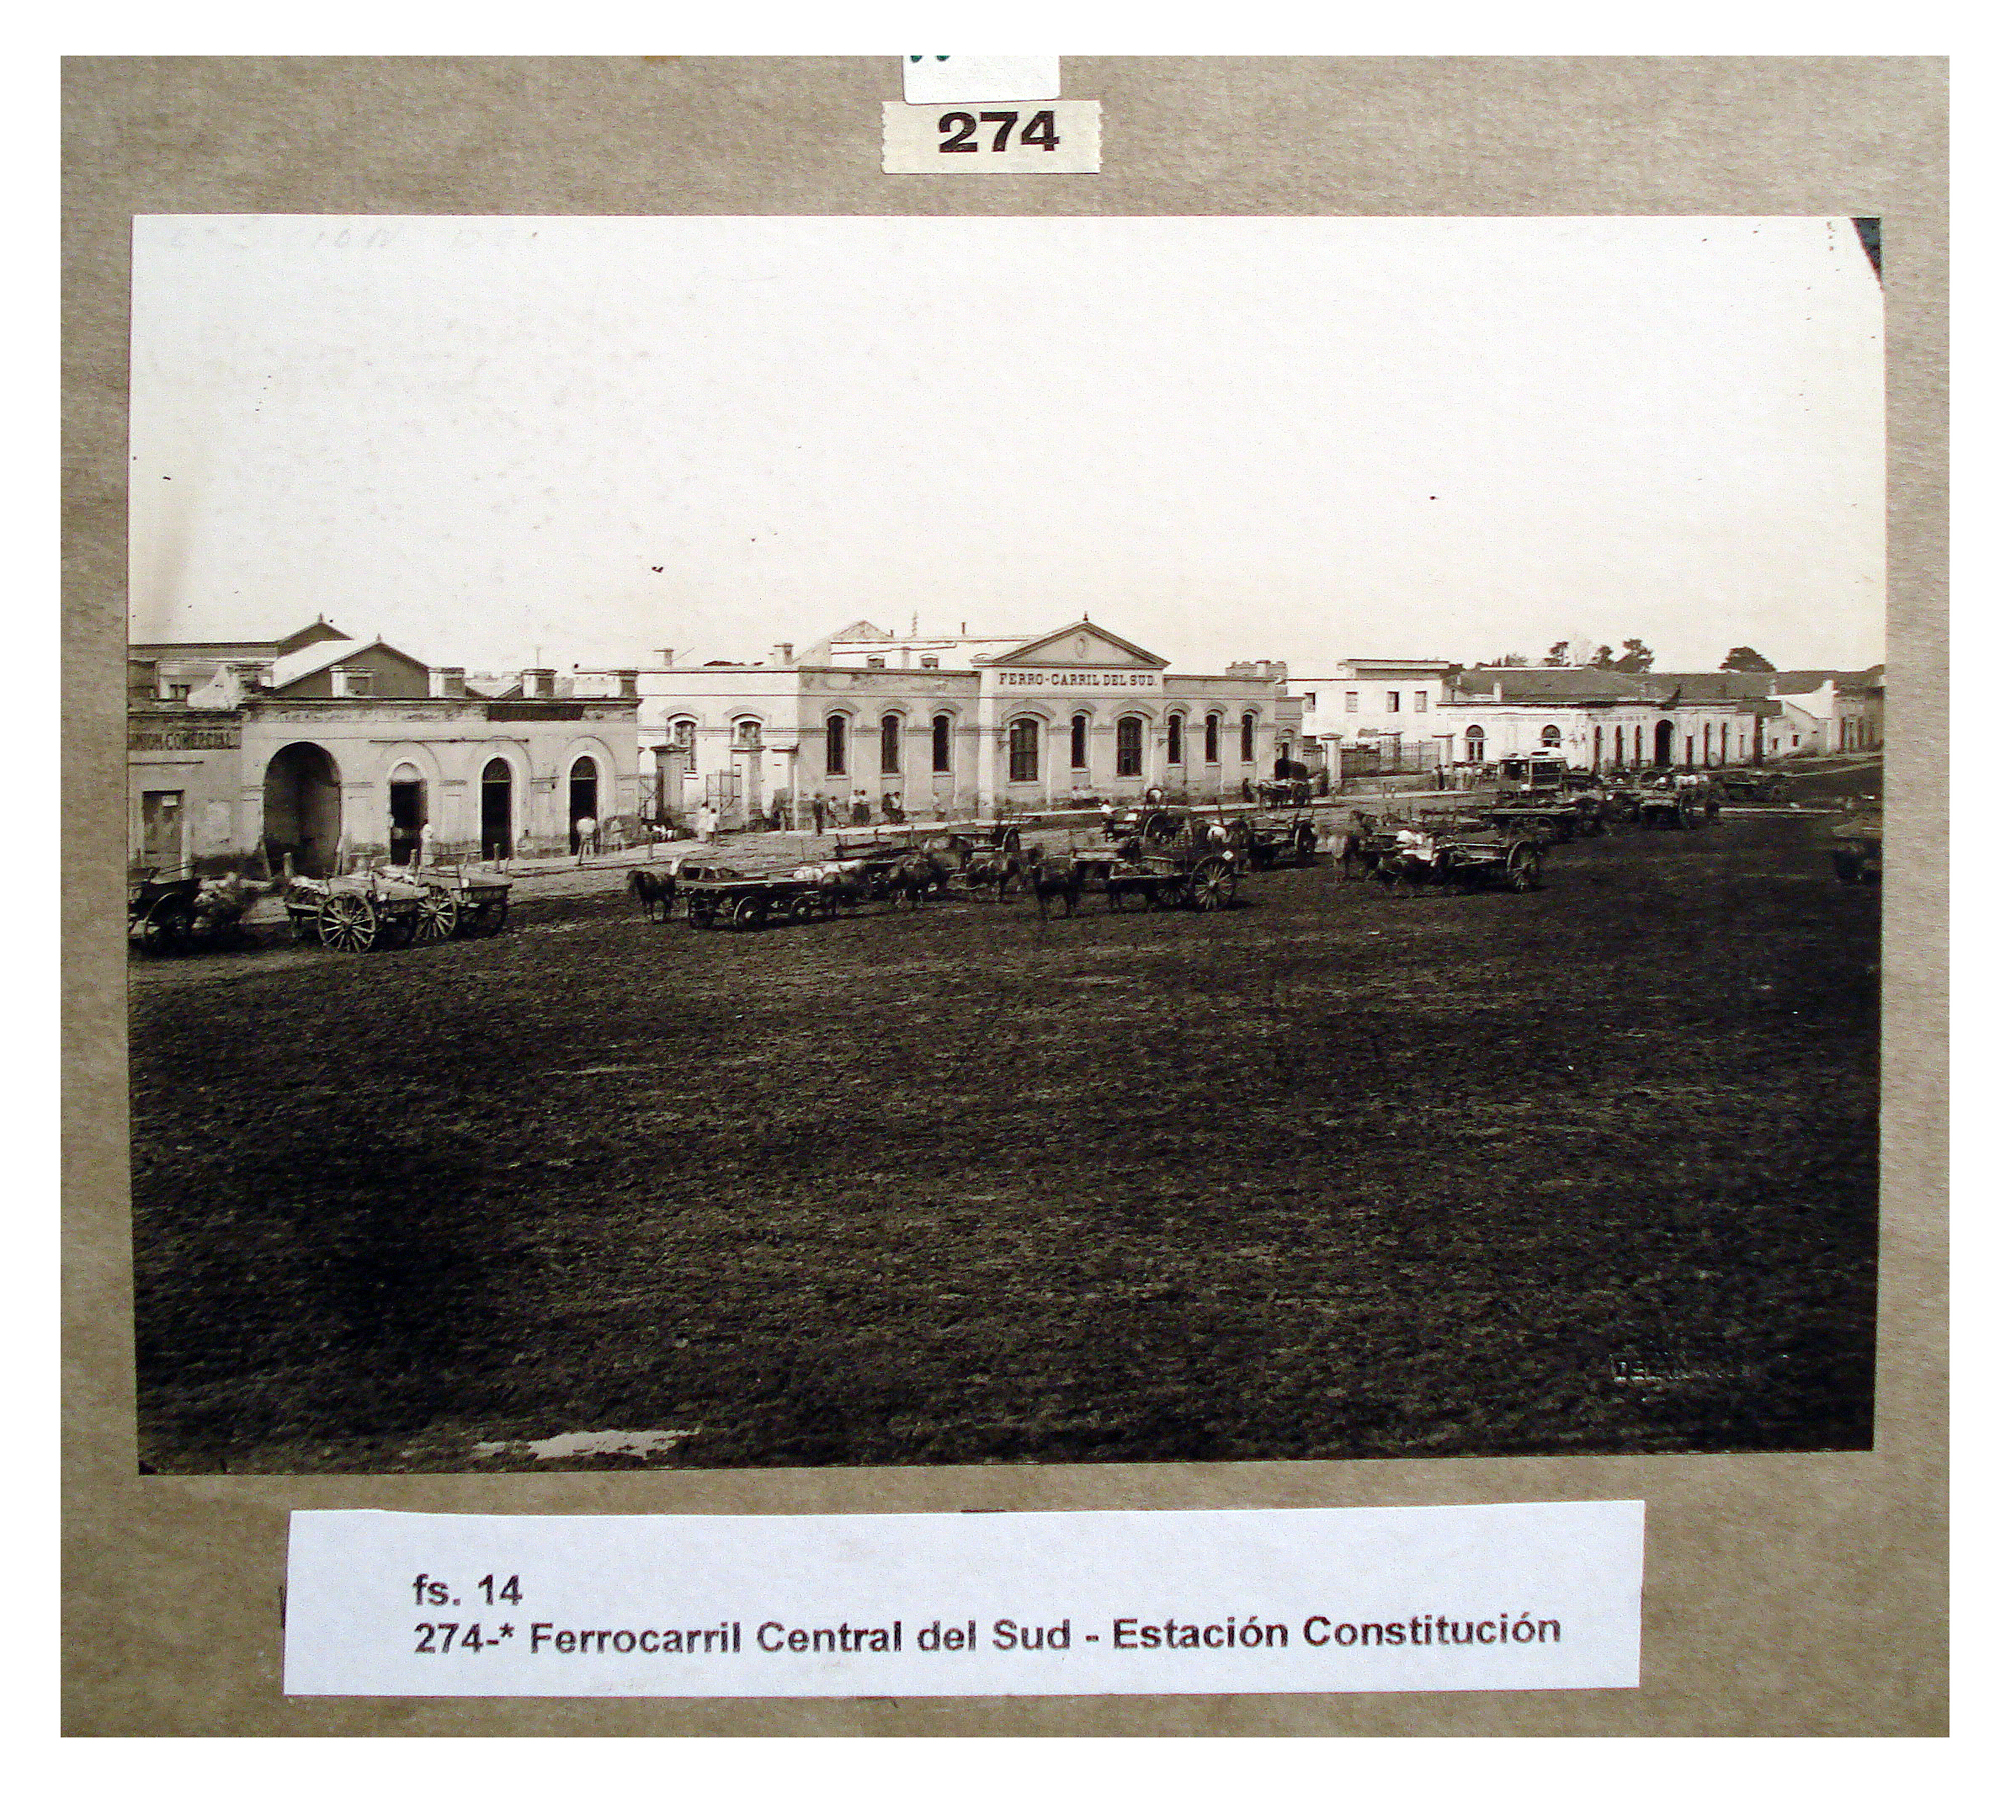 Estación Constitución del ferrocarril Central del Sud